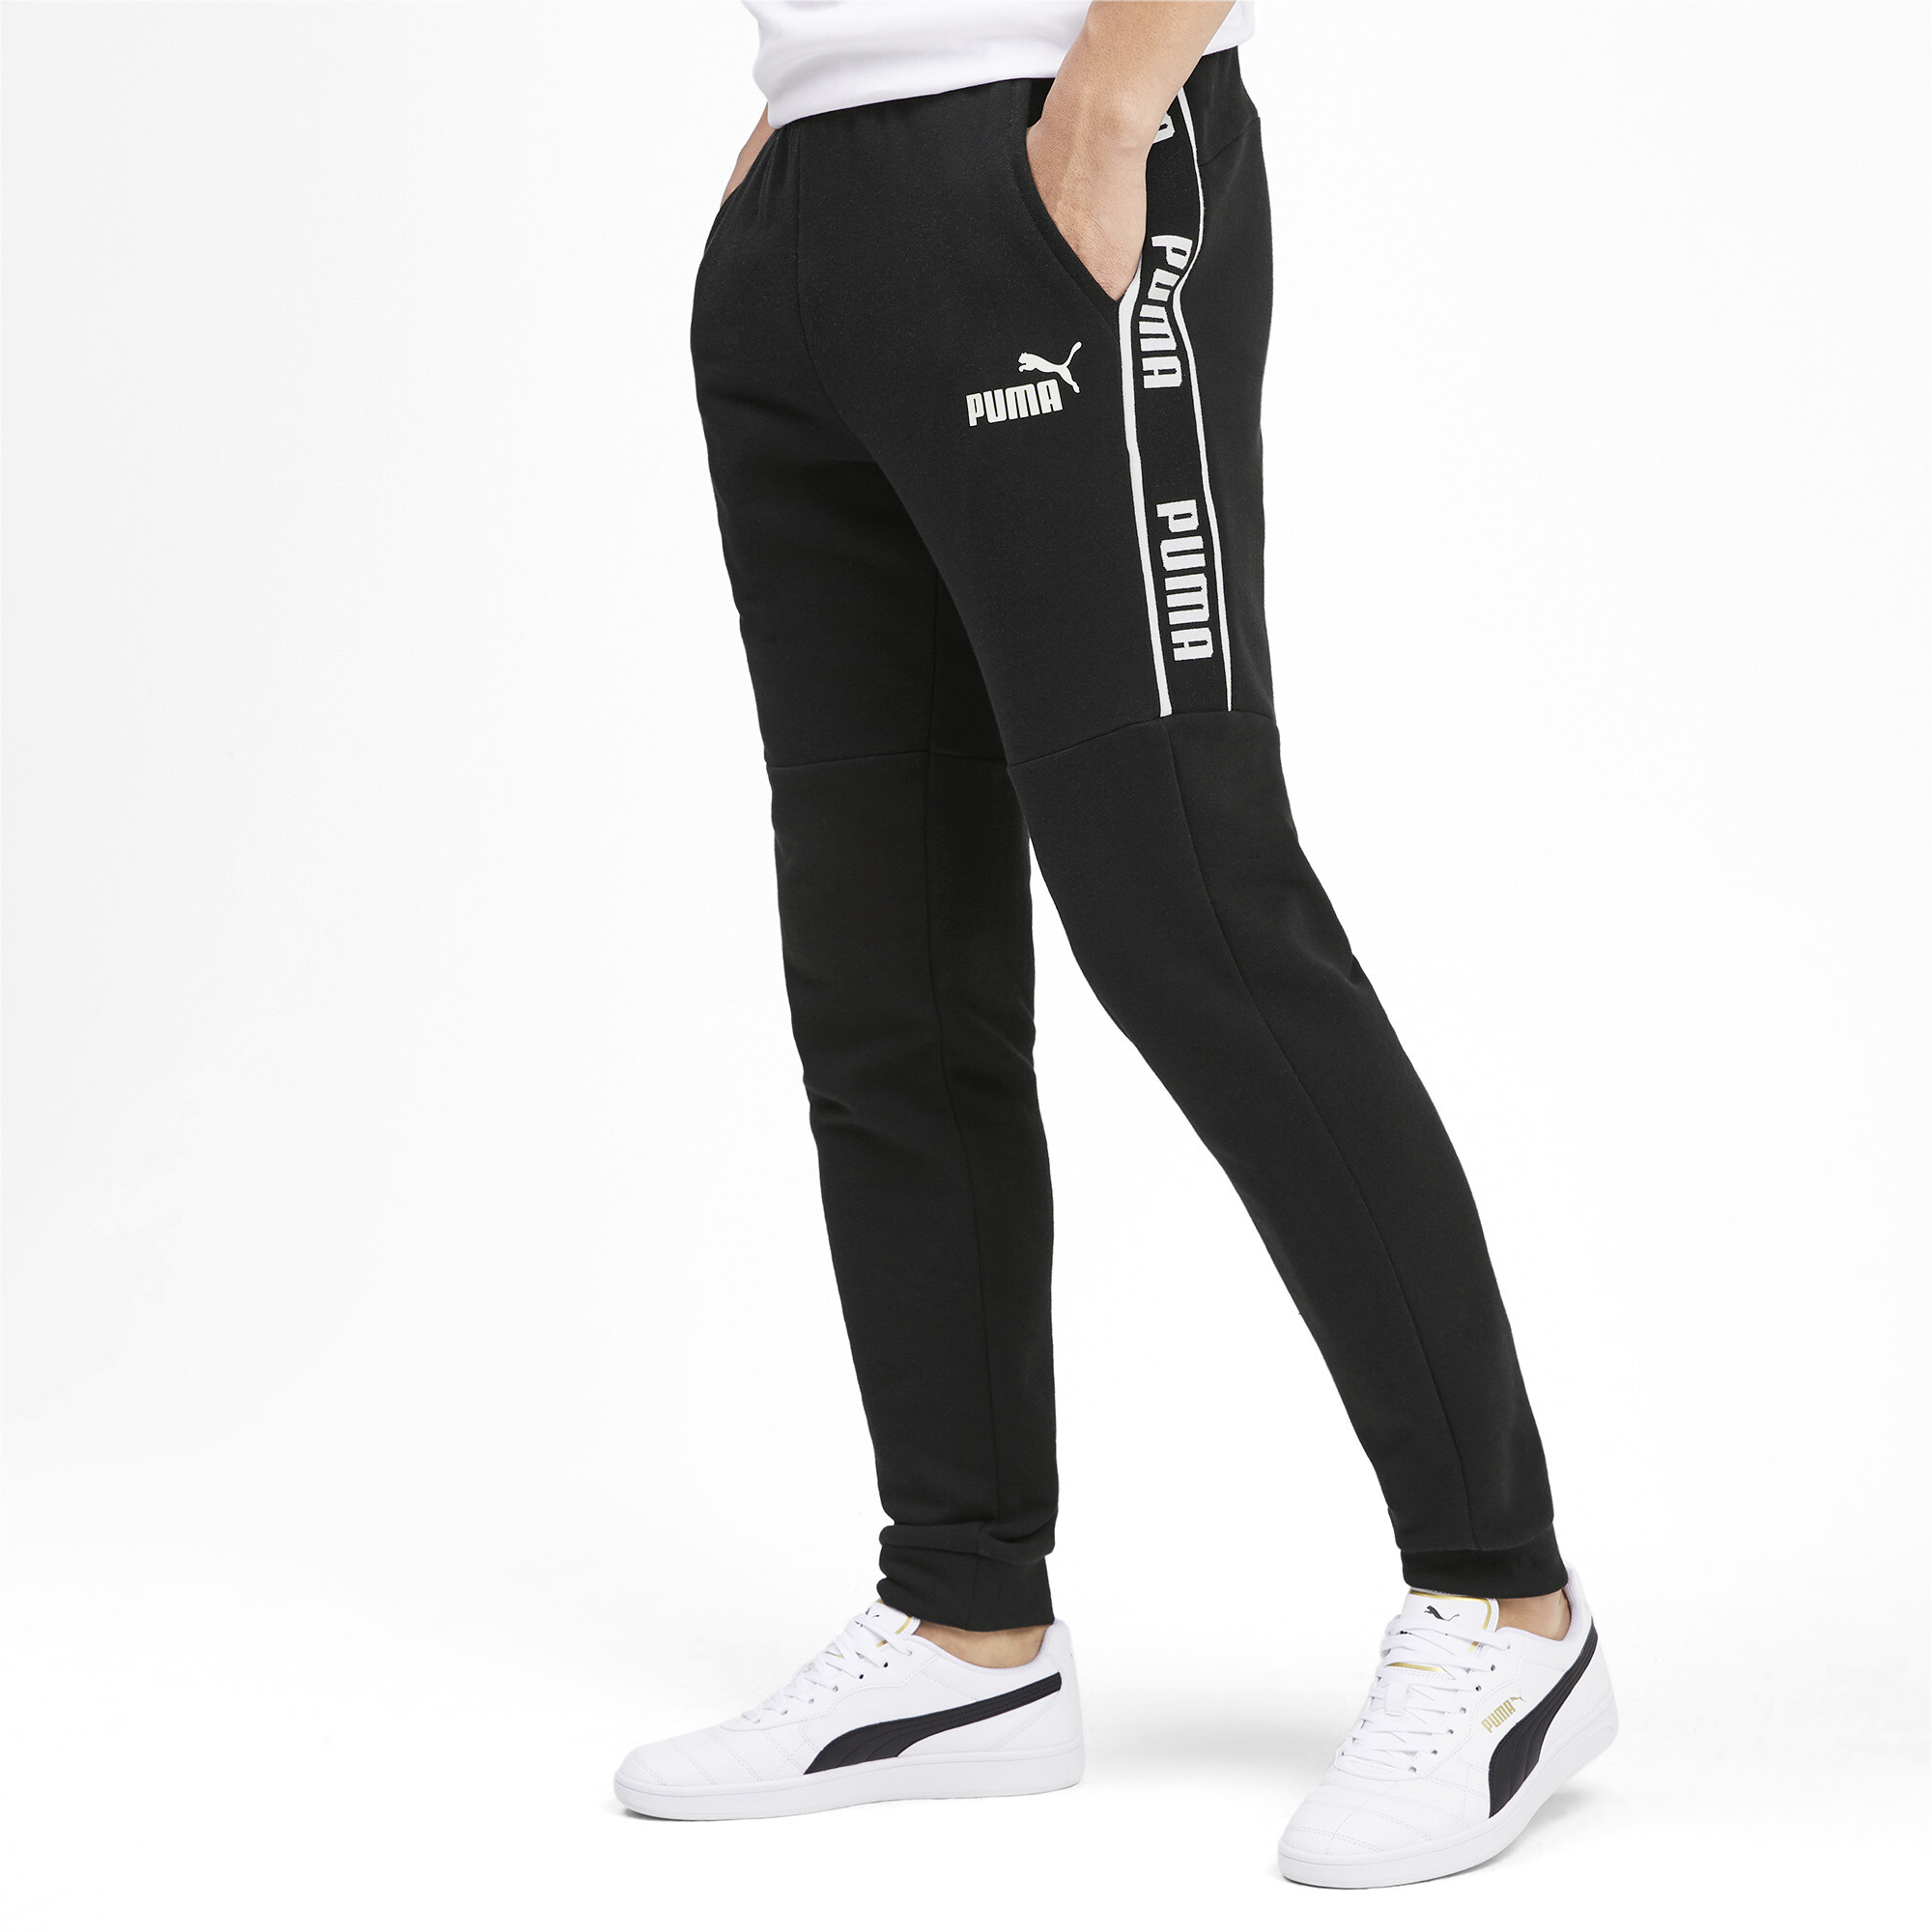 Men's Puma Amplified's Sweatpants, Black, Size M, Clothing